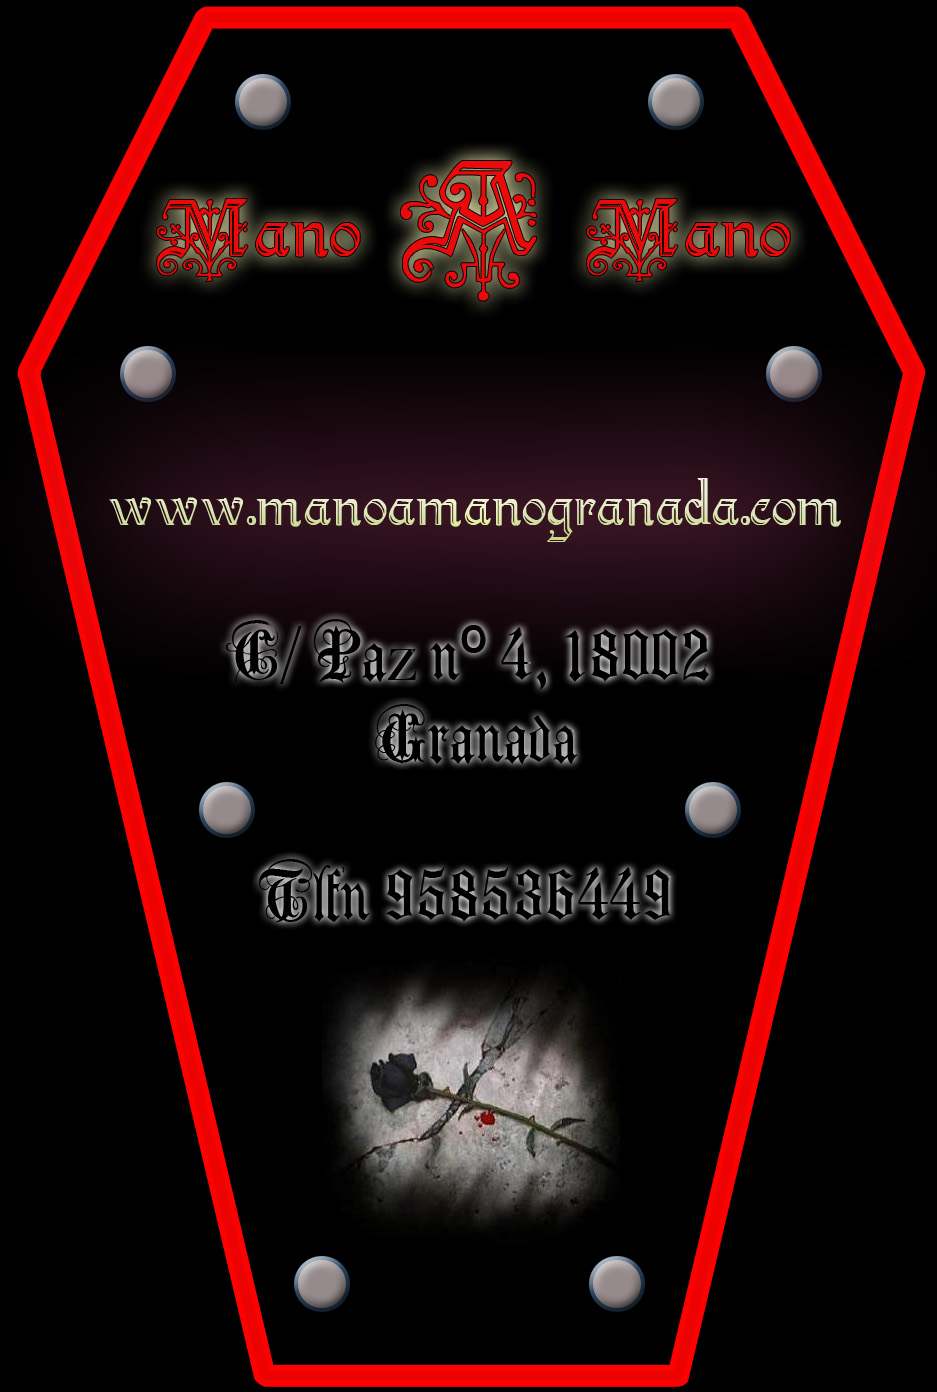 www.manoamanogranada.com